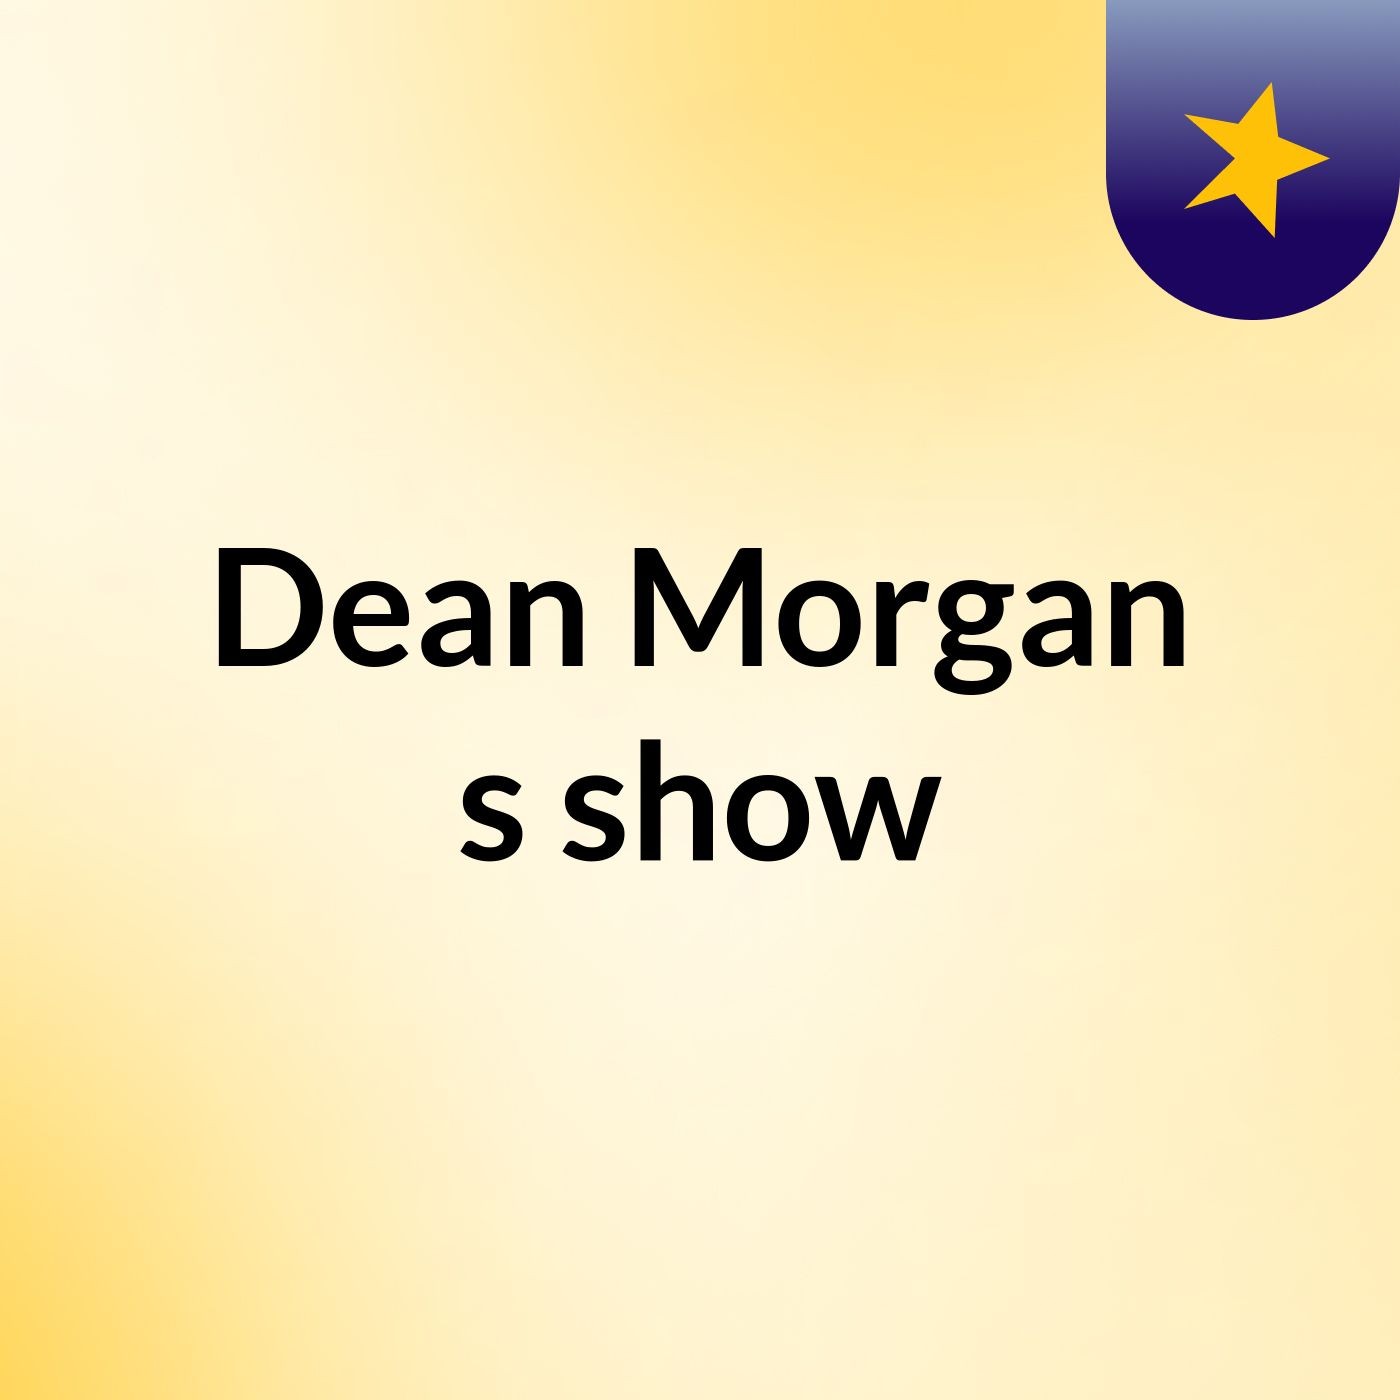 Dean Morgan's show